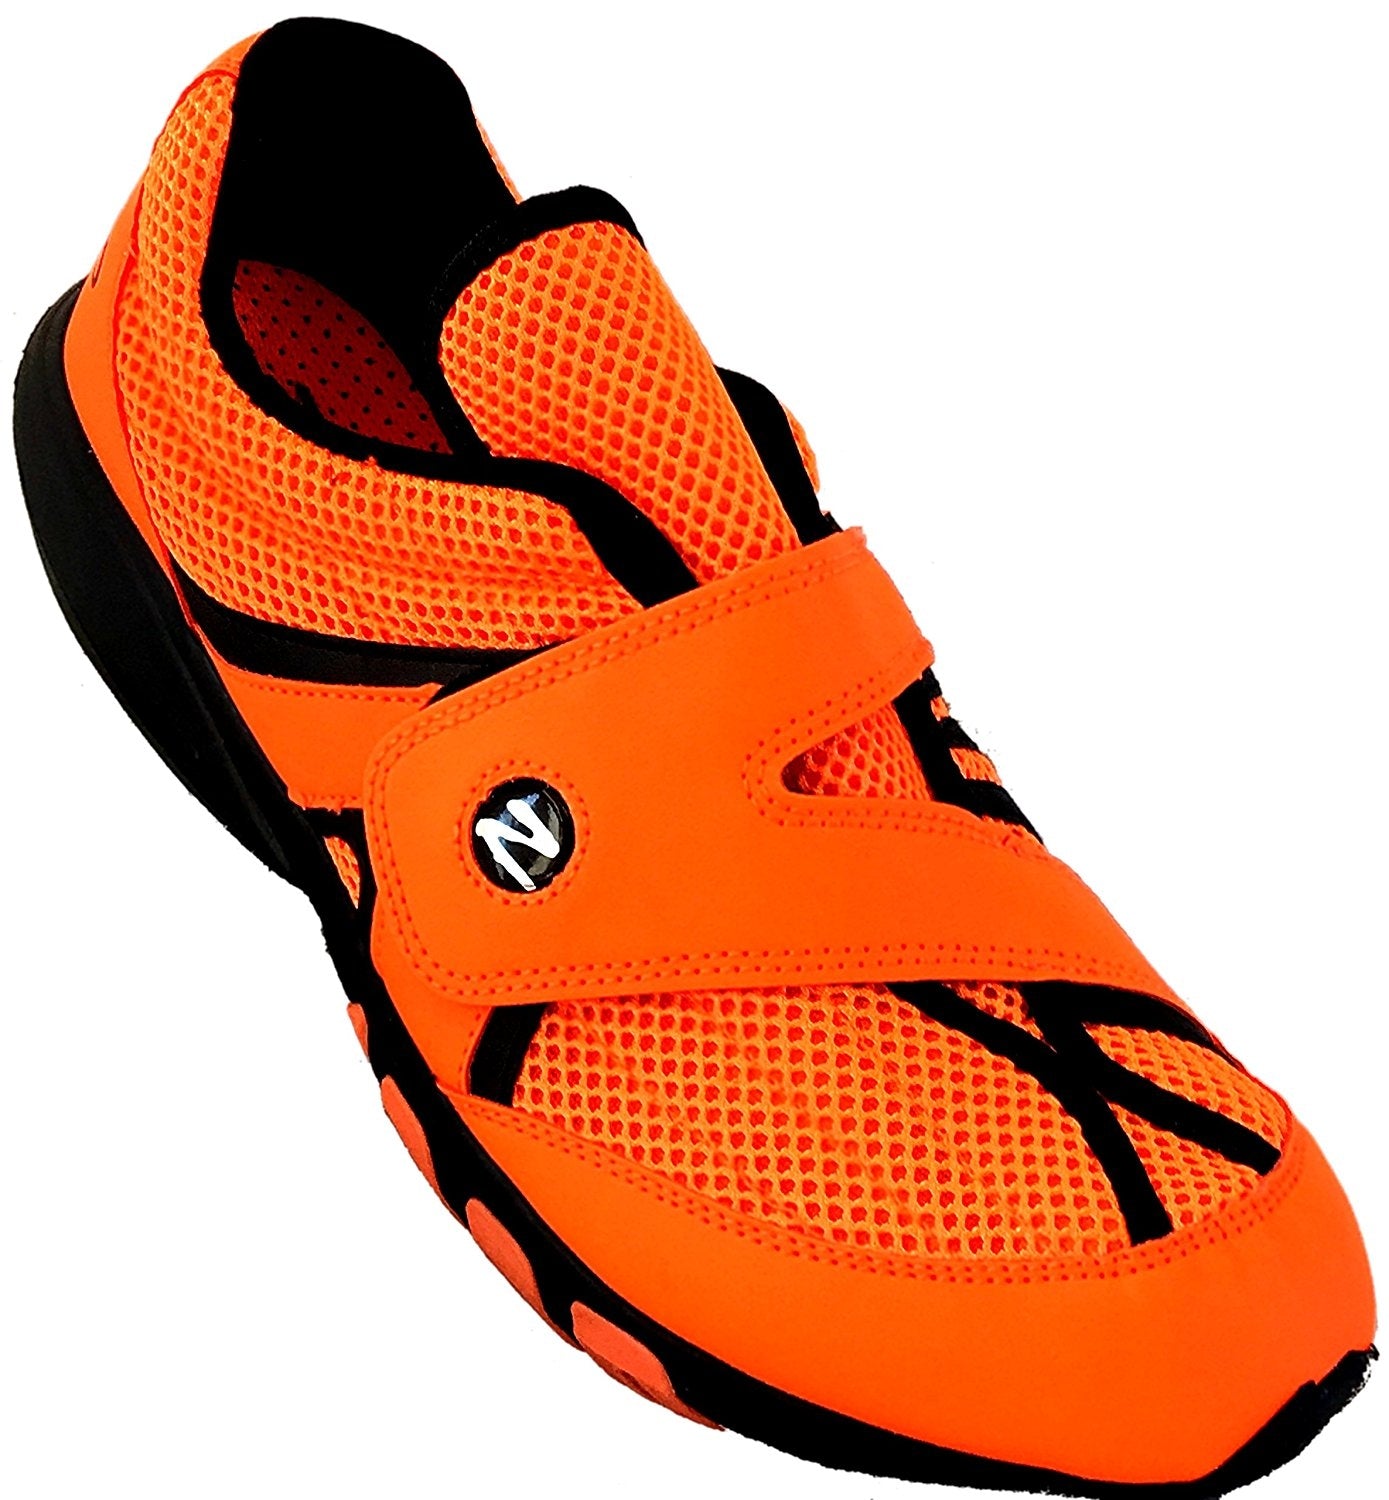 Zeko Orange Shoe